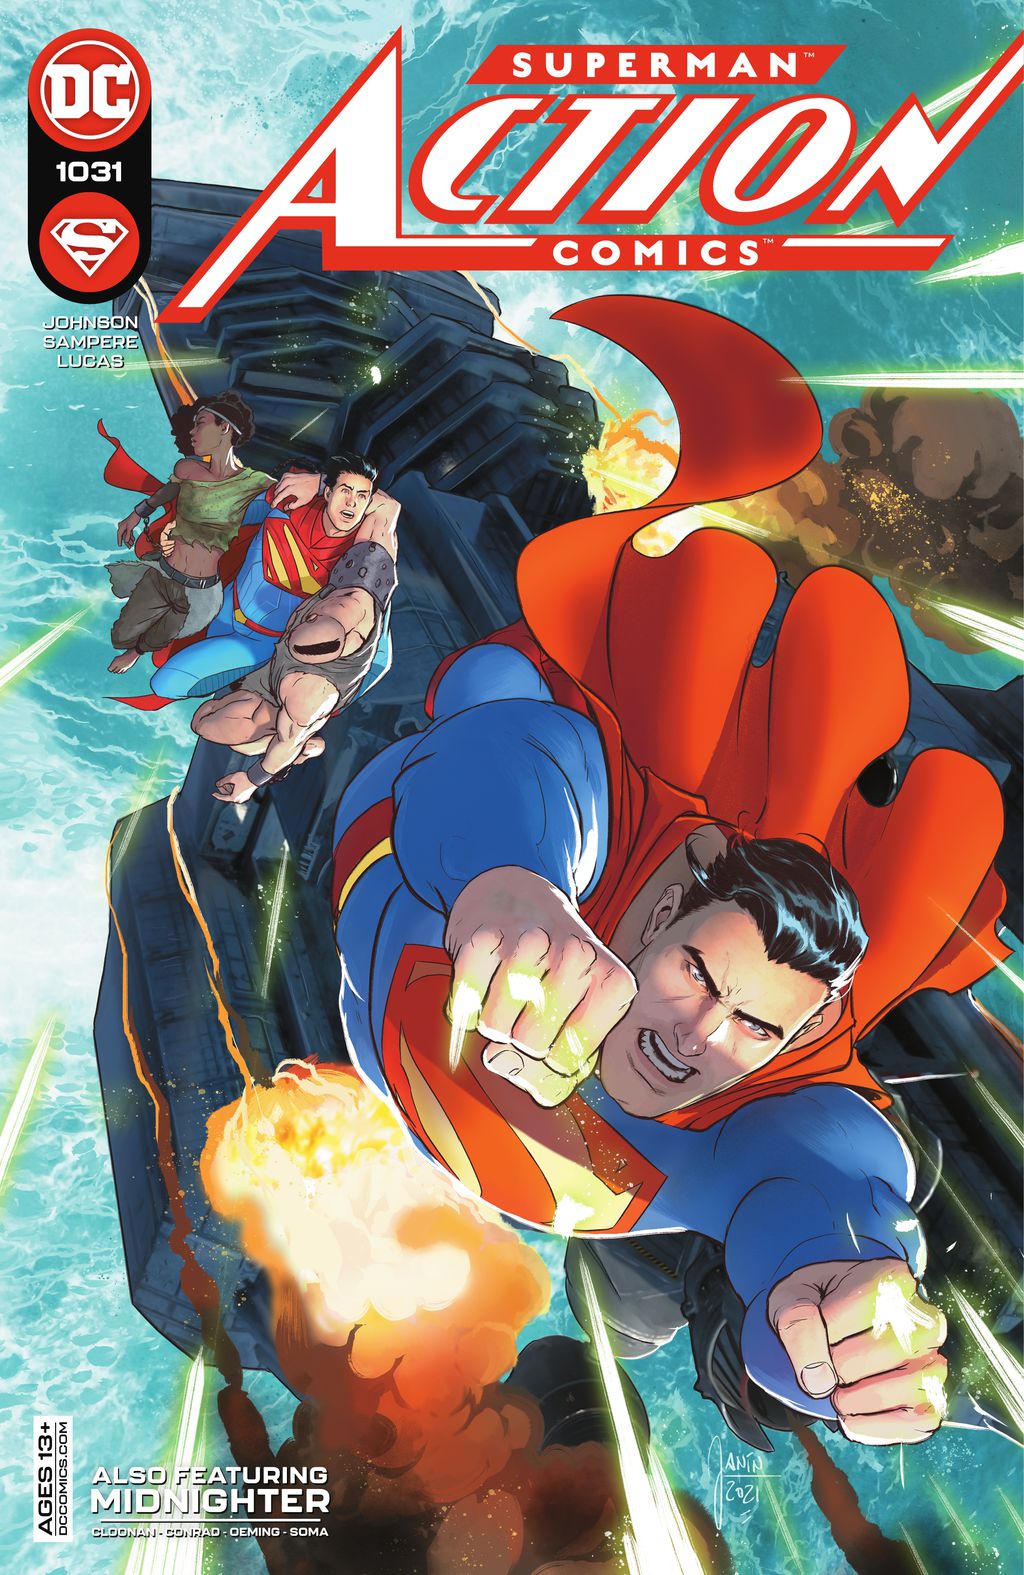 Fusão de Batman e Superman aparece em personagem de nova HQ - Canaltech